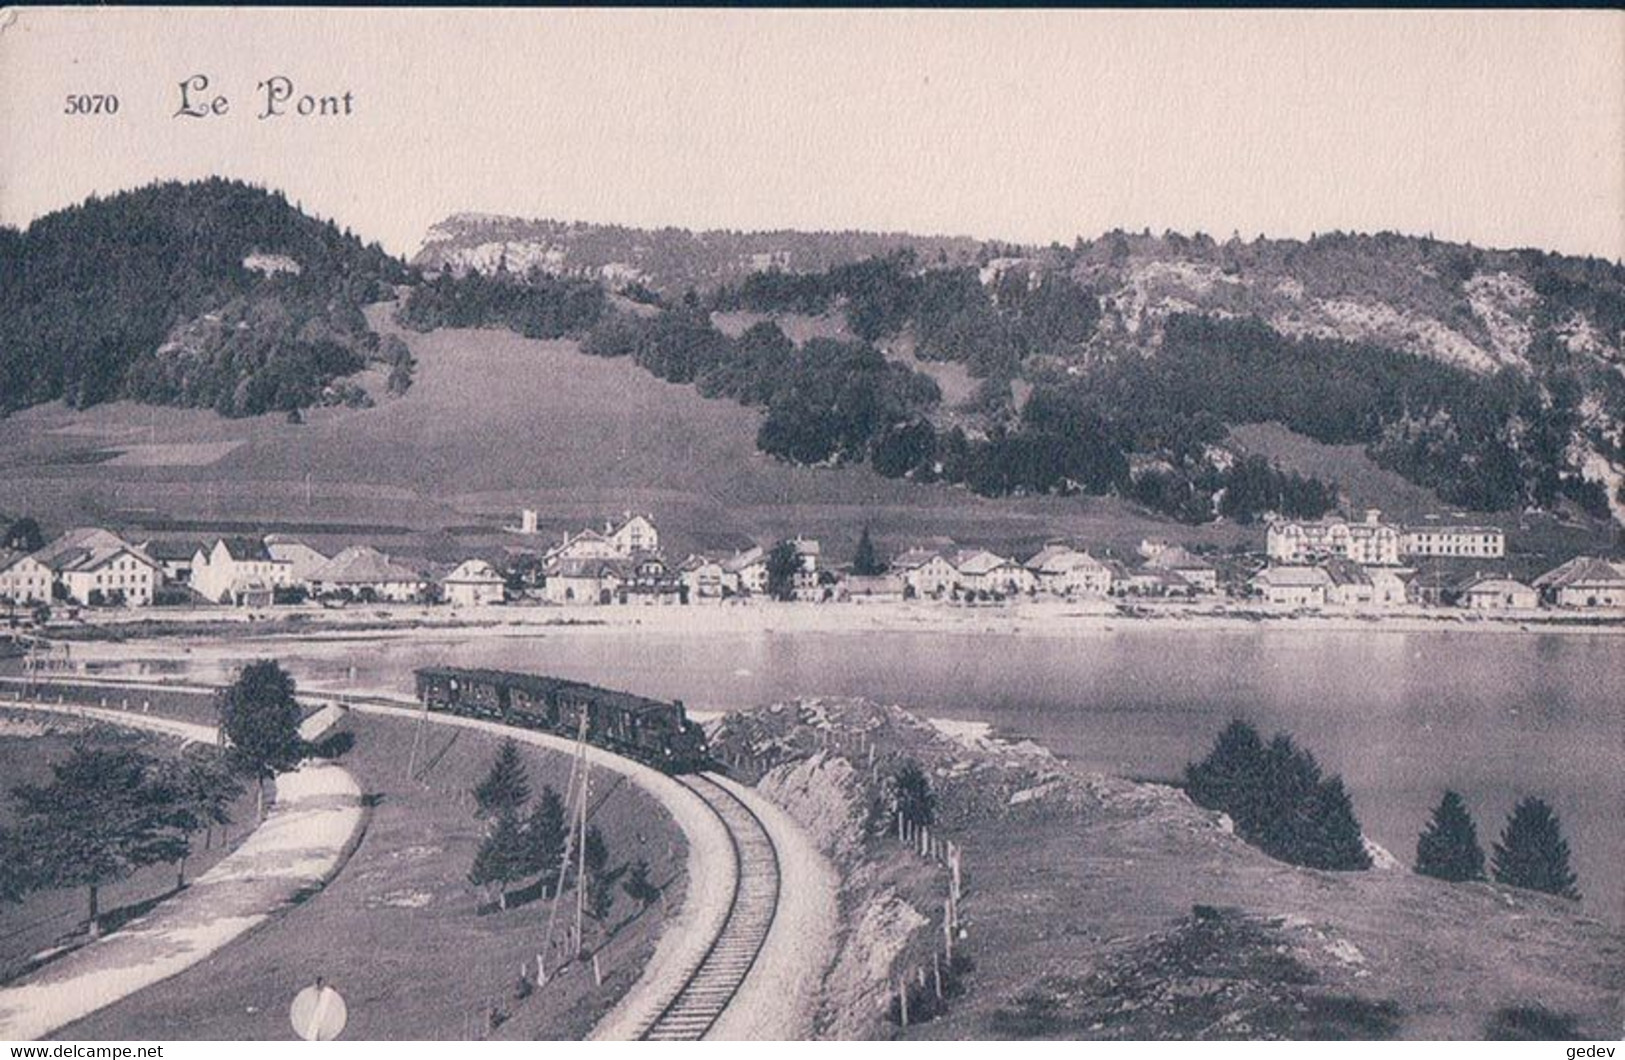 Vallée De Joux VD, Chemin De Fer Suisse, Train à Vapeur Entre Le Pont Et Les Charbonnières (5070) - Treni